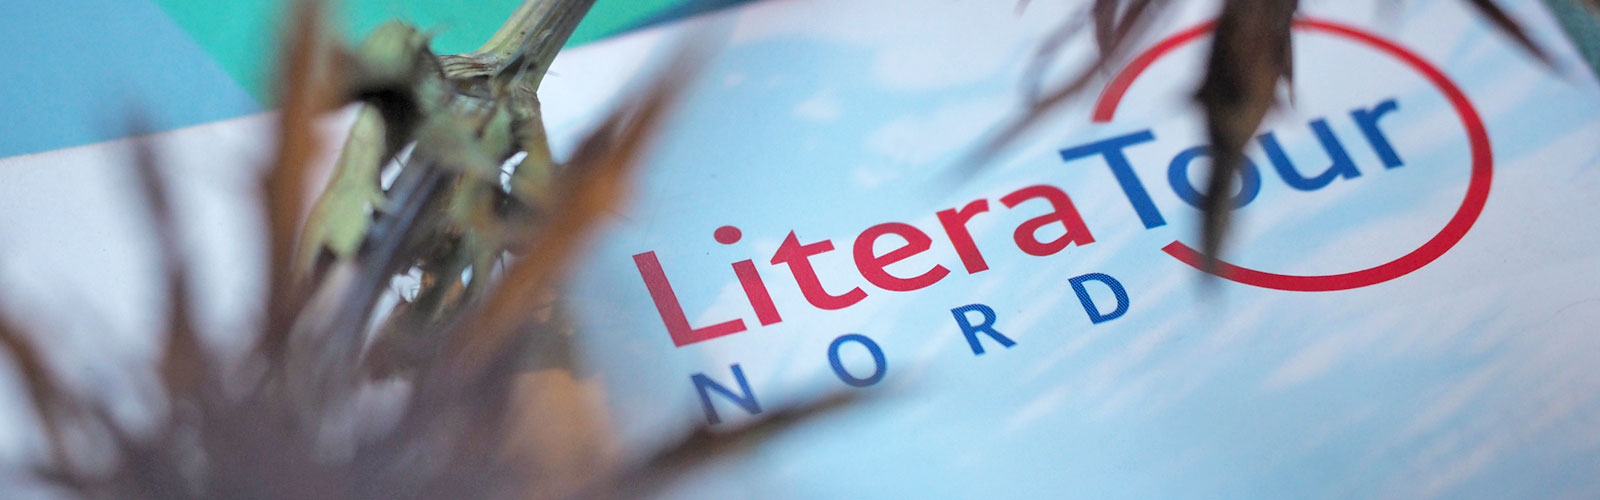 Foto vom Flyer zur LiteraTour Nord